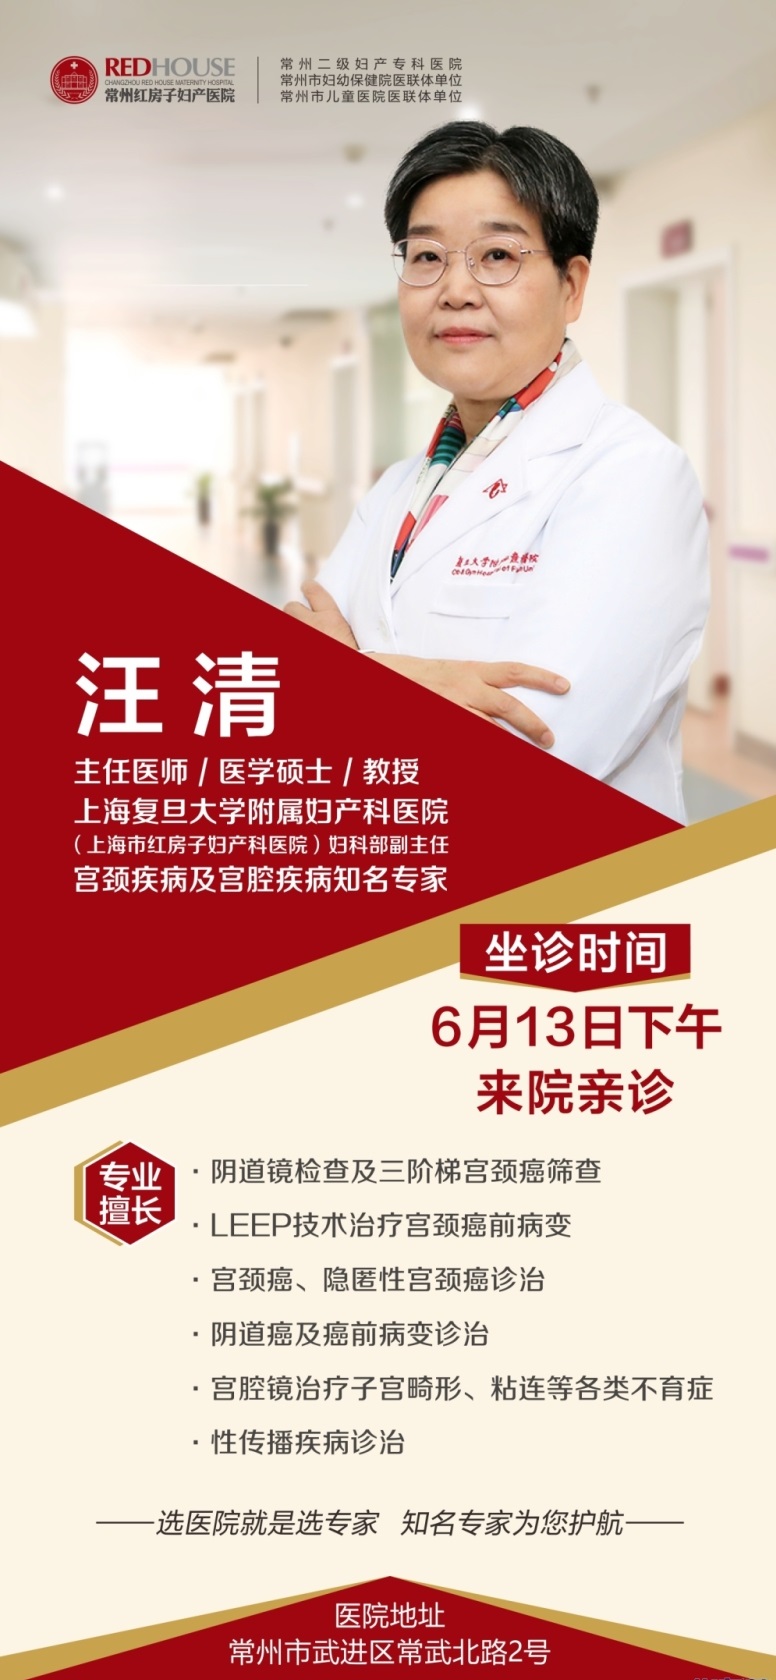 常州红房子医院-热烈欢迎上海知名妇科医师来我院坐诊